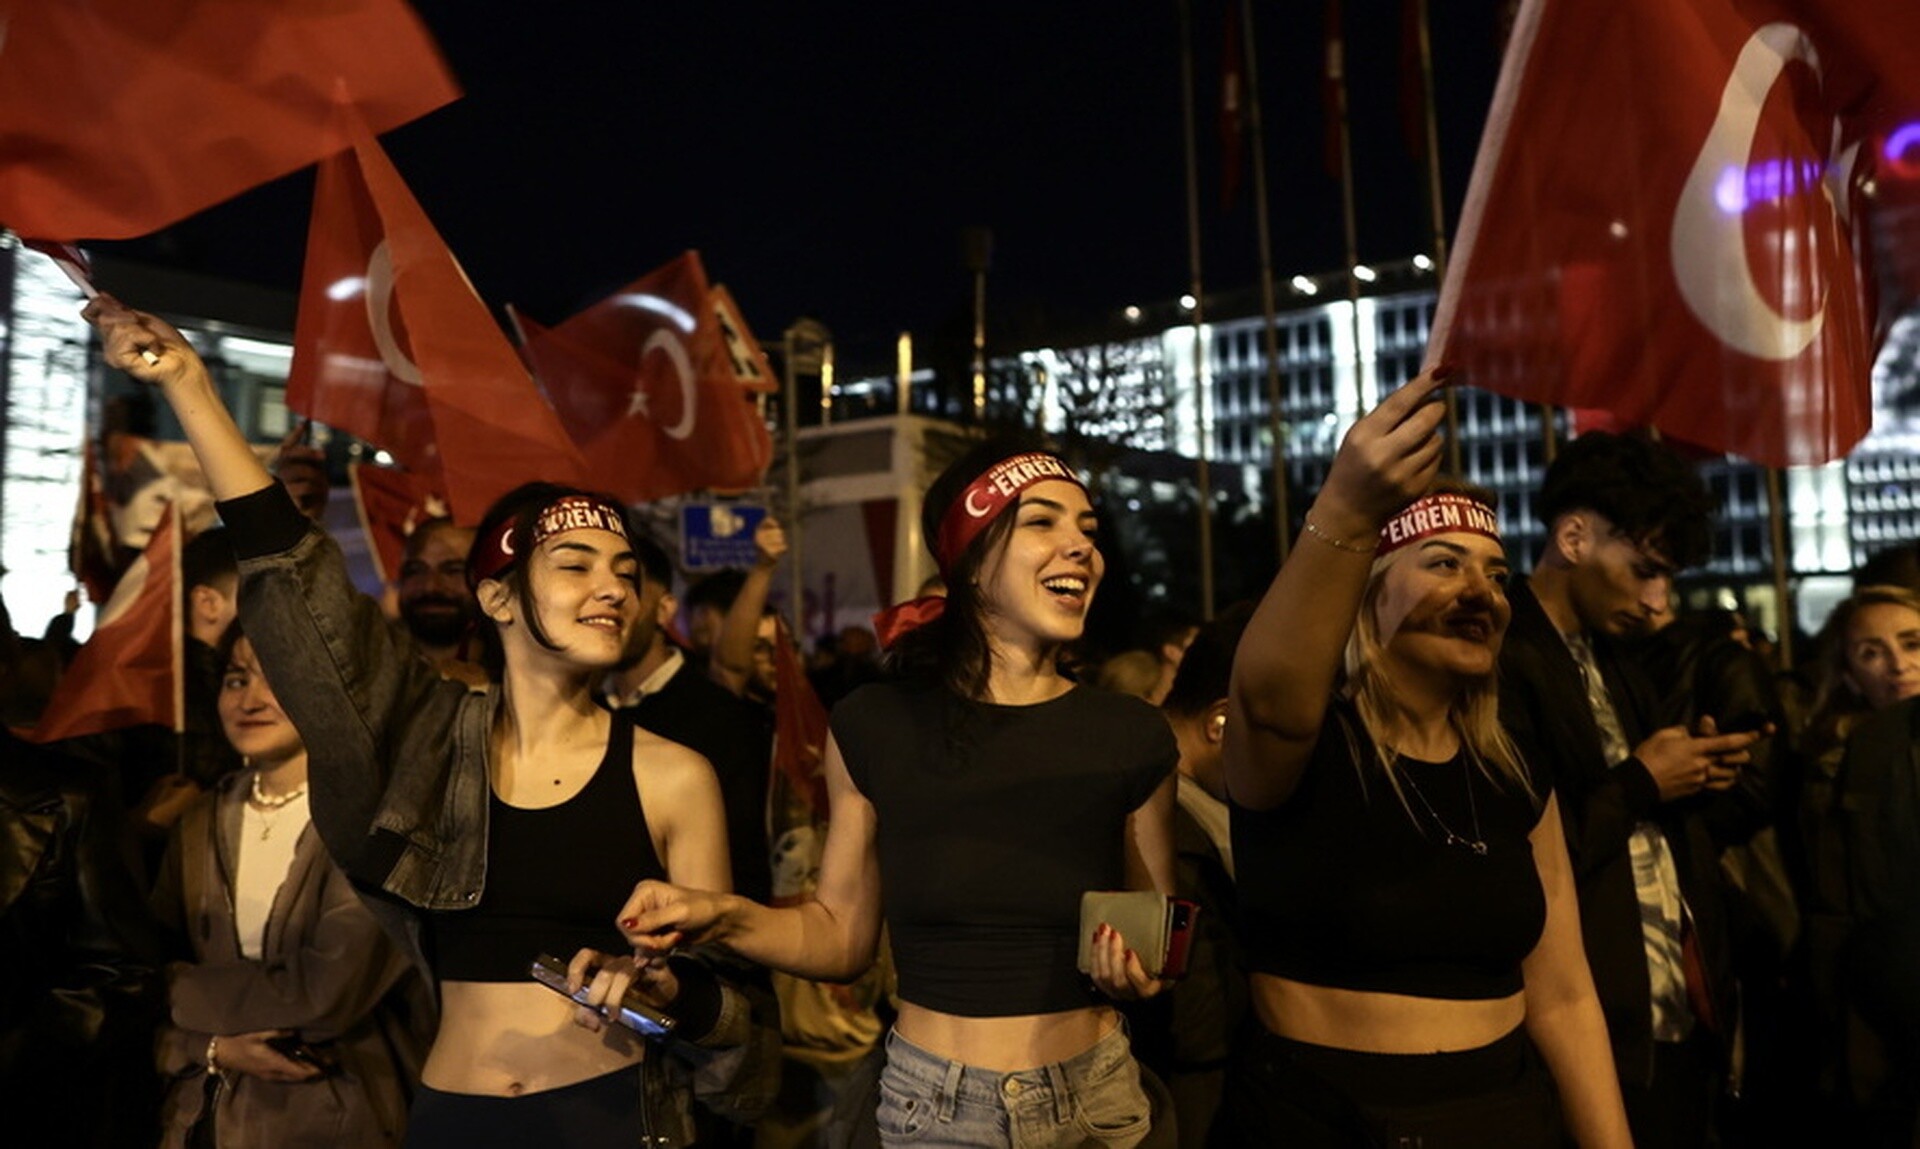 Τουρκικές εκλογές: Πανωλεθρία Ερντογάν, πρώτη δύναμη οι Κεμαλιστές, τρίτο το κουρδικό κόμμα